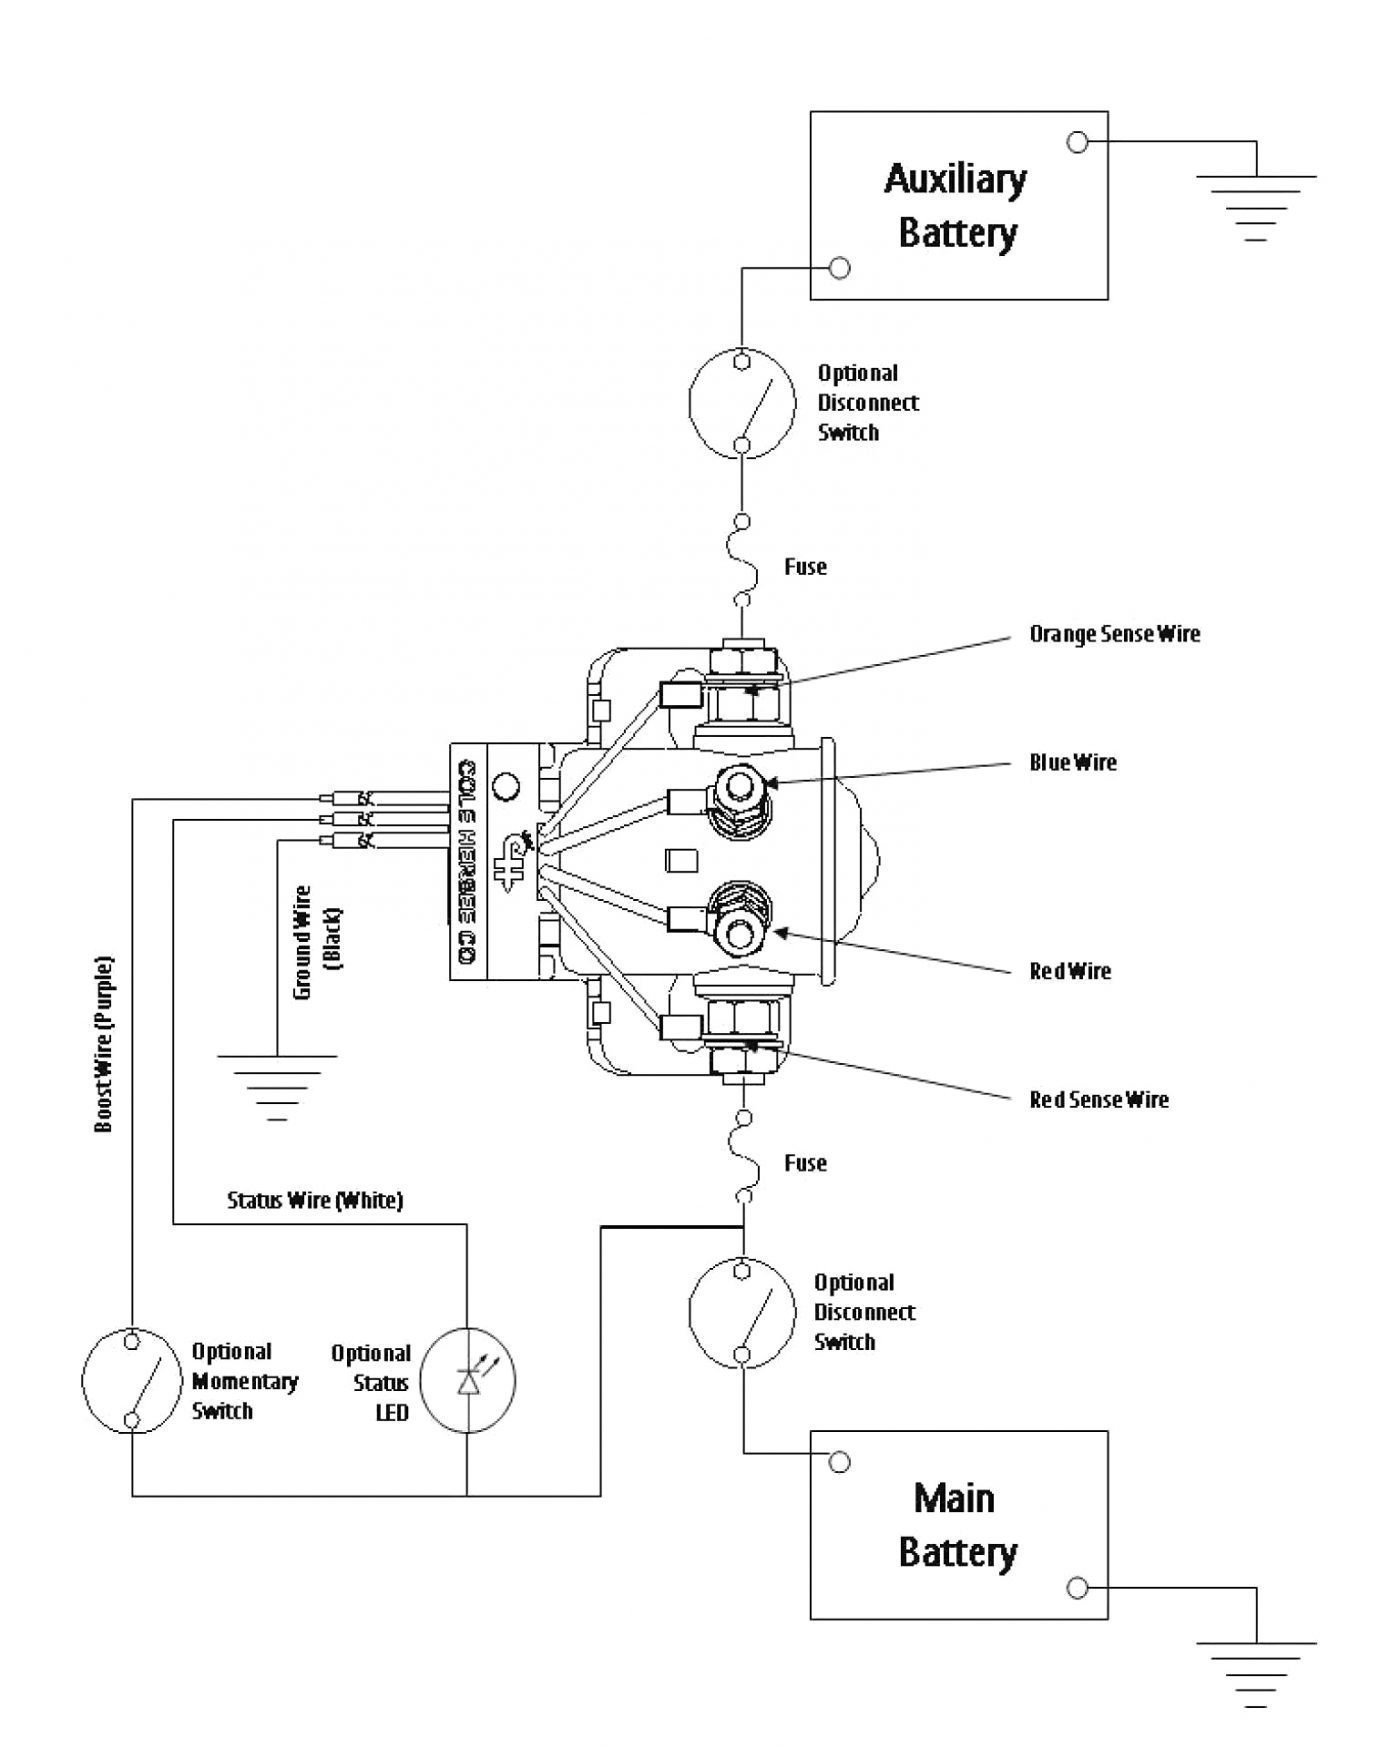 Starter Generator Wiring Diagram Aircraft Best Interav Alternator Wiring Diagram & Interav Alternator Wiring